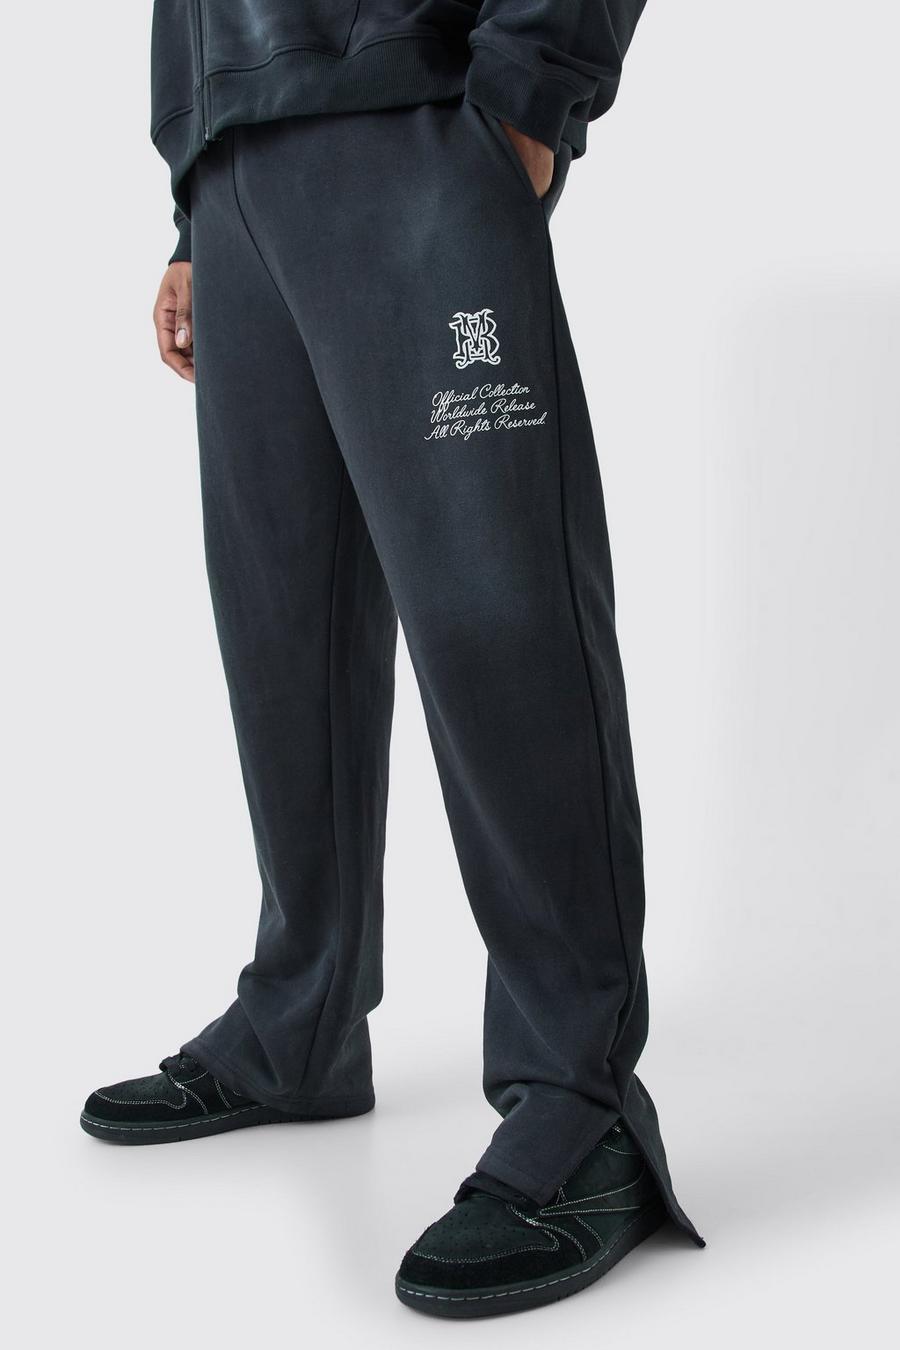 Pantaloni tuta Plus Size in lavaggio con rovescio a ricci e spacco laterale, Black